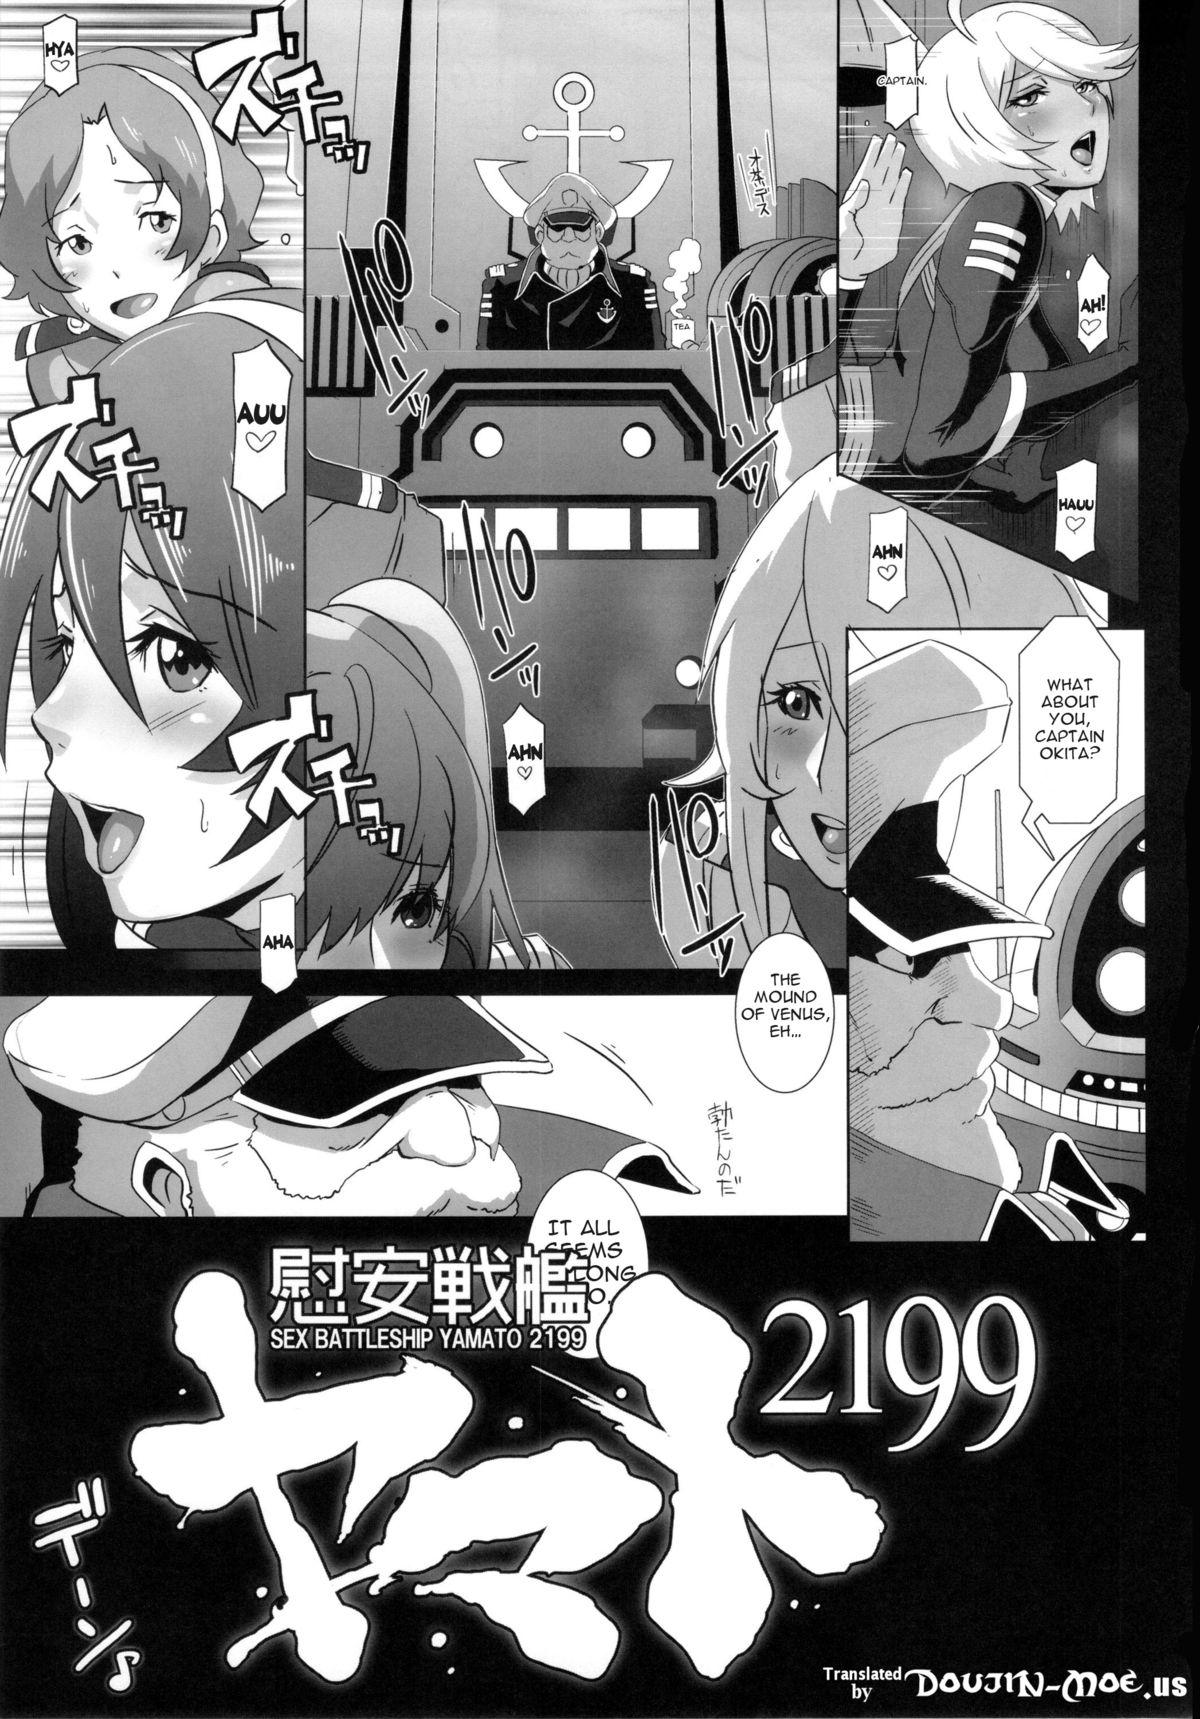 Stepsiblings Ian Senkan Yamato 2199 | Comfort Battleship Yamato 2199 - Space battleship yamato Hung - Page 4